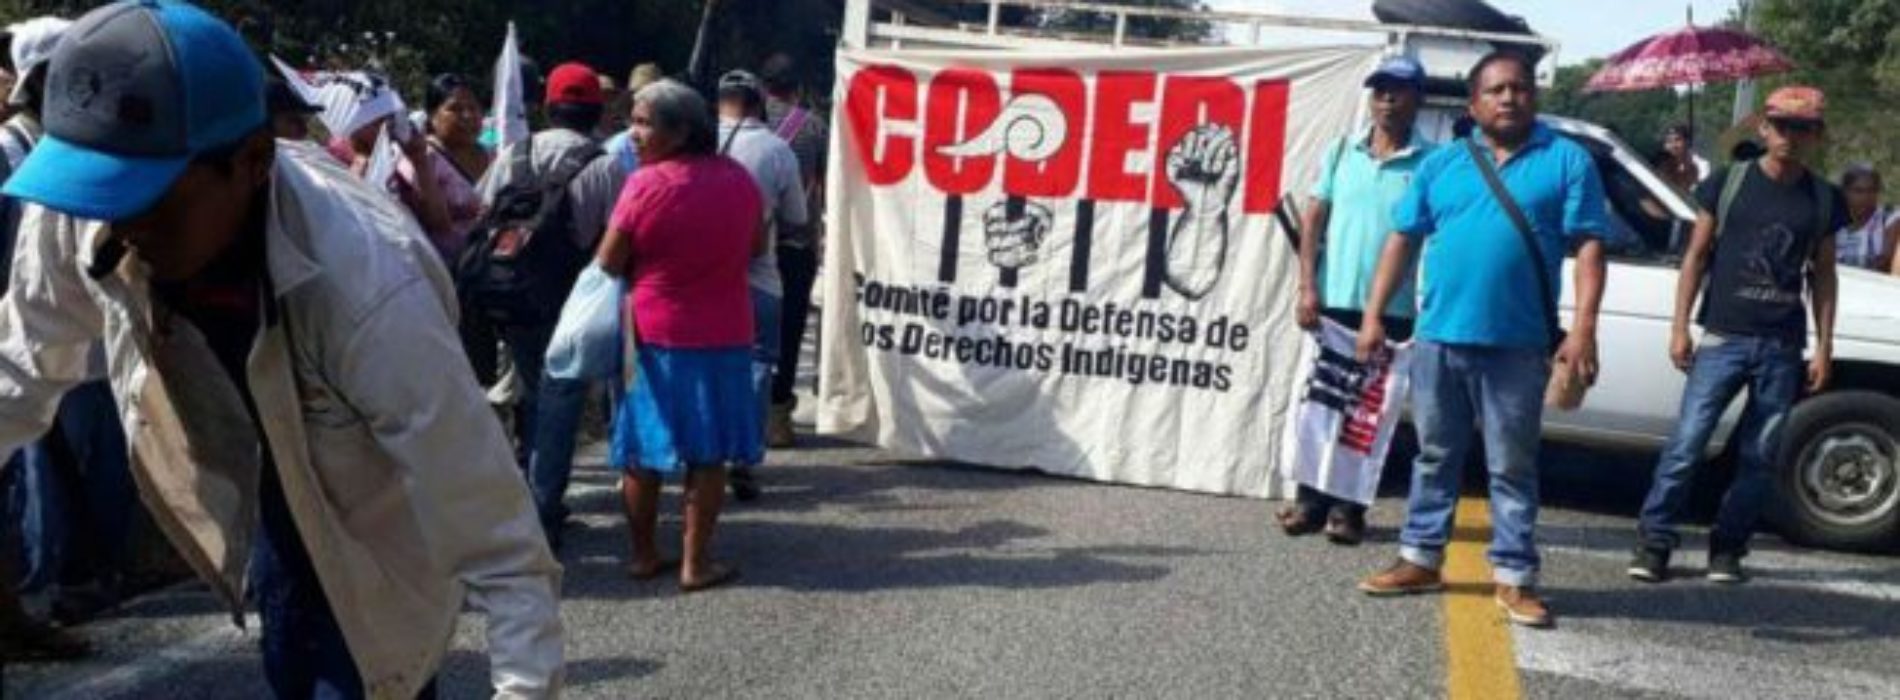 Ultiman a defensor de derechos indígenas en Oaxaca